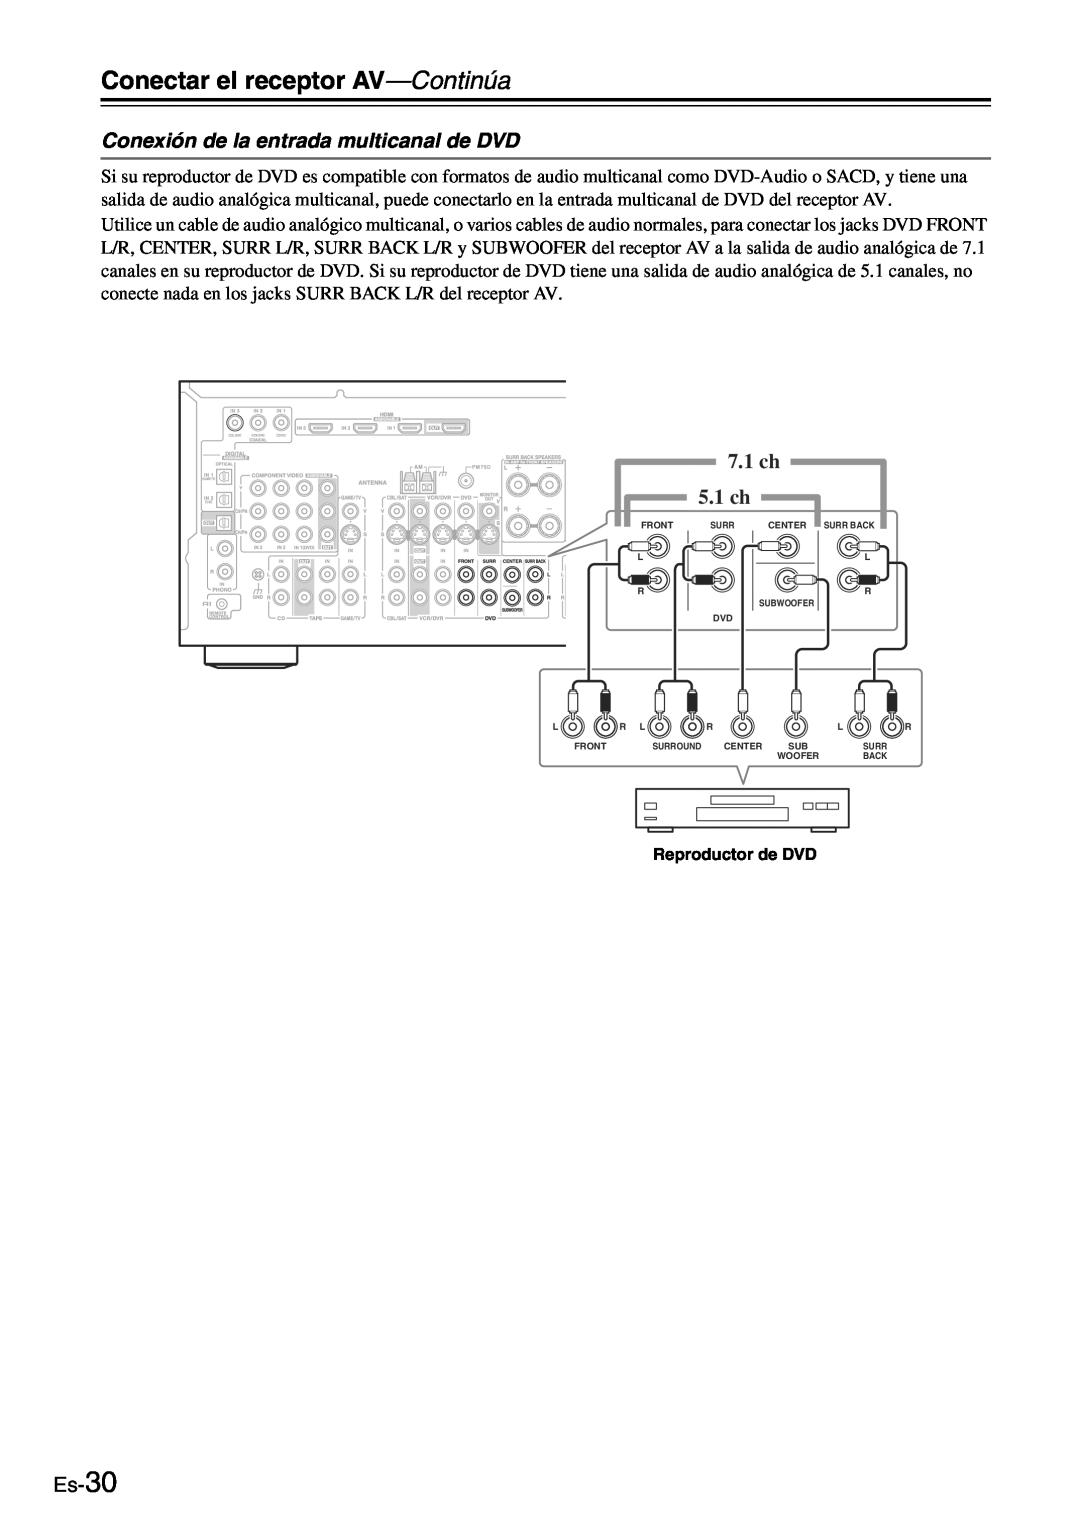 Onkyo TX-SR705 manual Conexión de la entrada multicanal de DVD, Es-30, Conectar el receptor AV-Continúa, 7.1 ch, 5.1 ch 